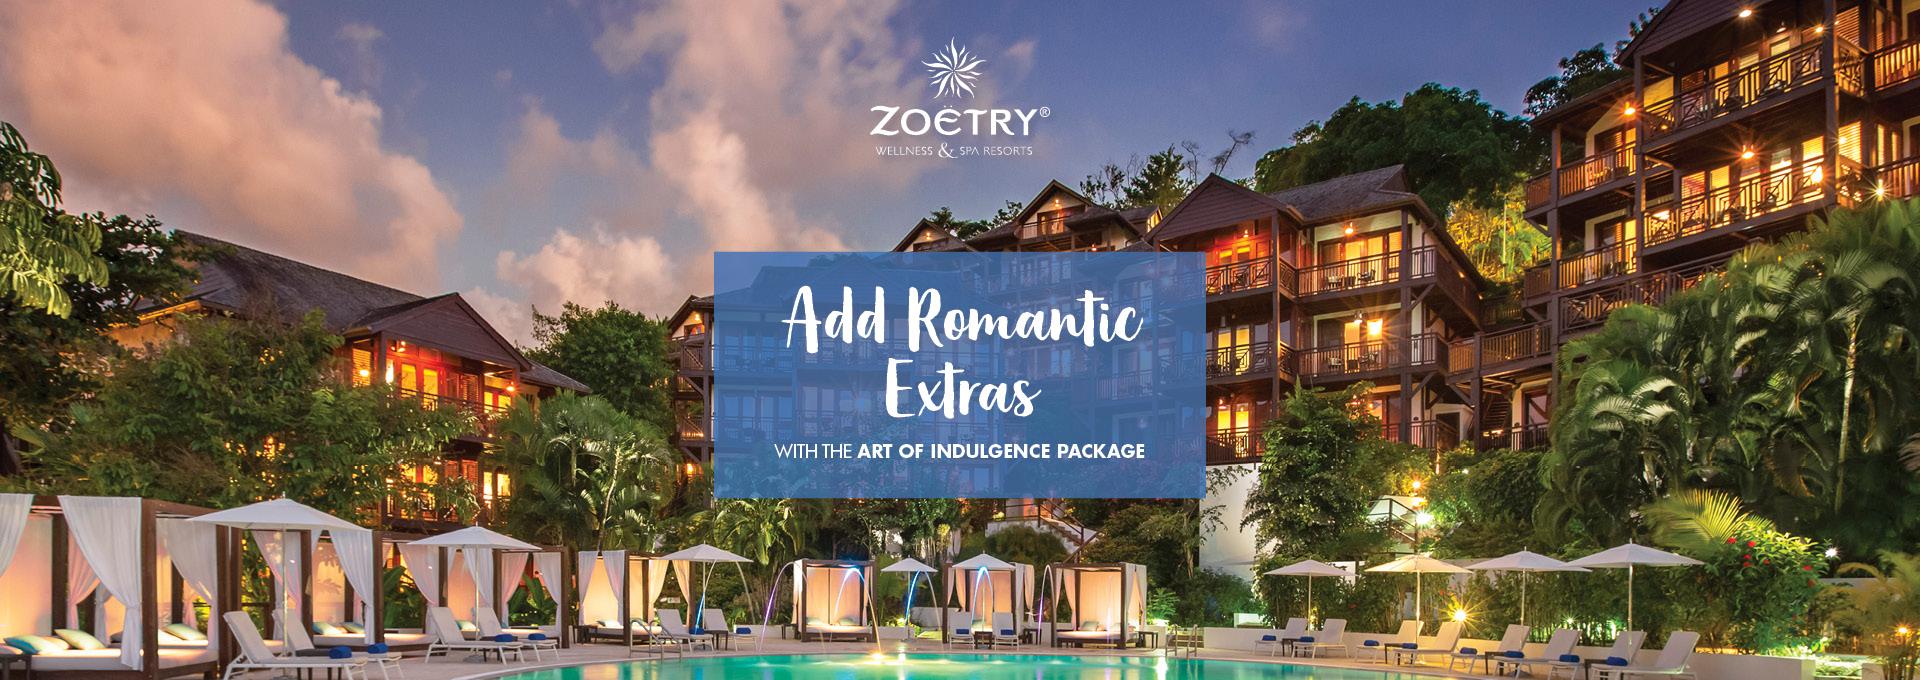 Zoetry Marigot resort promotion banner